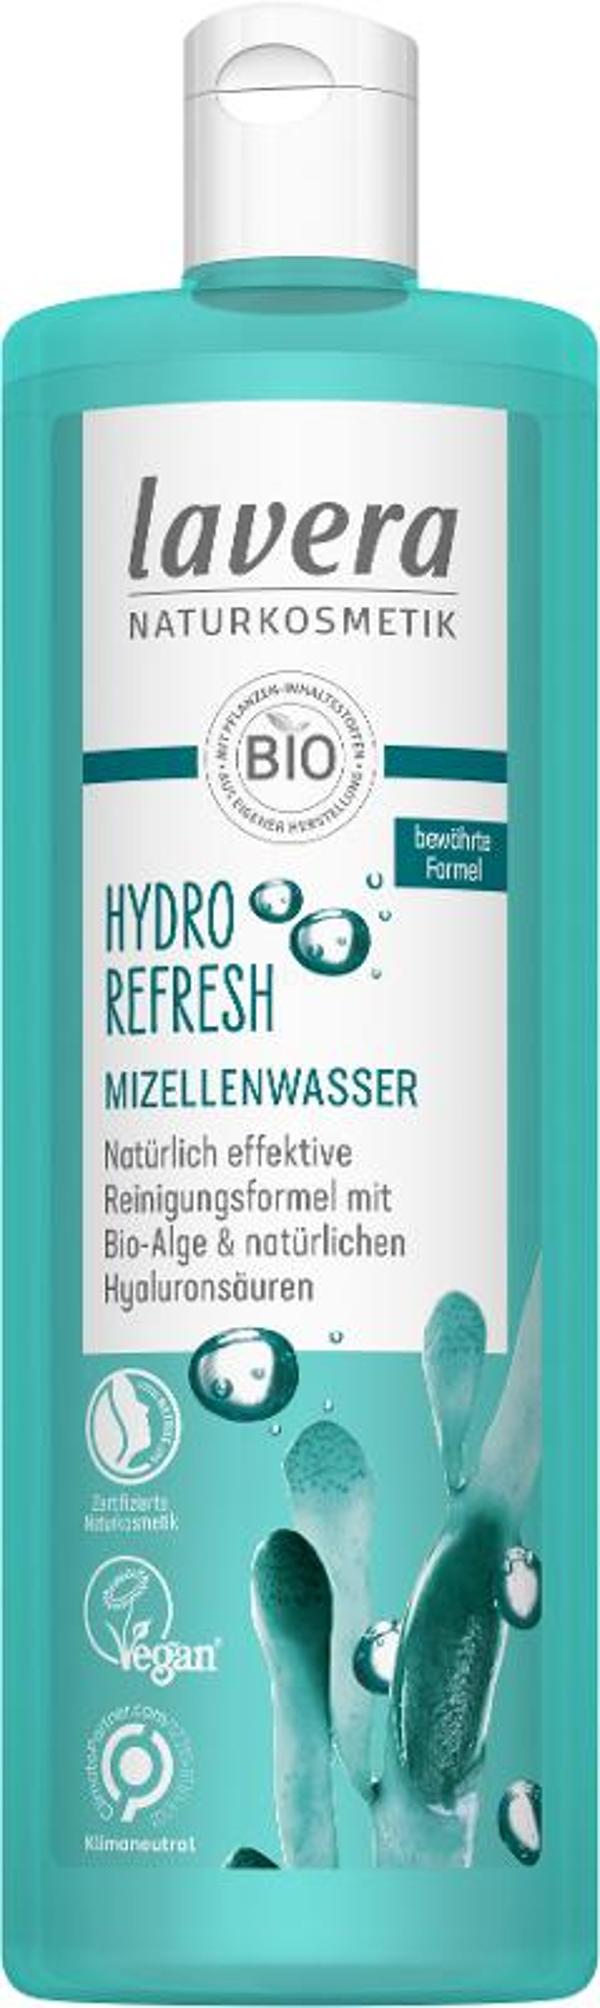 Produktfoto zu Hydro Refresh Mizellenwasser